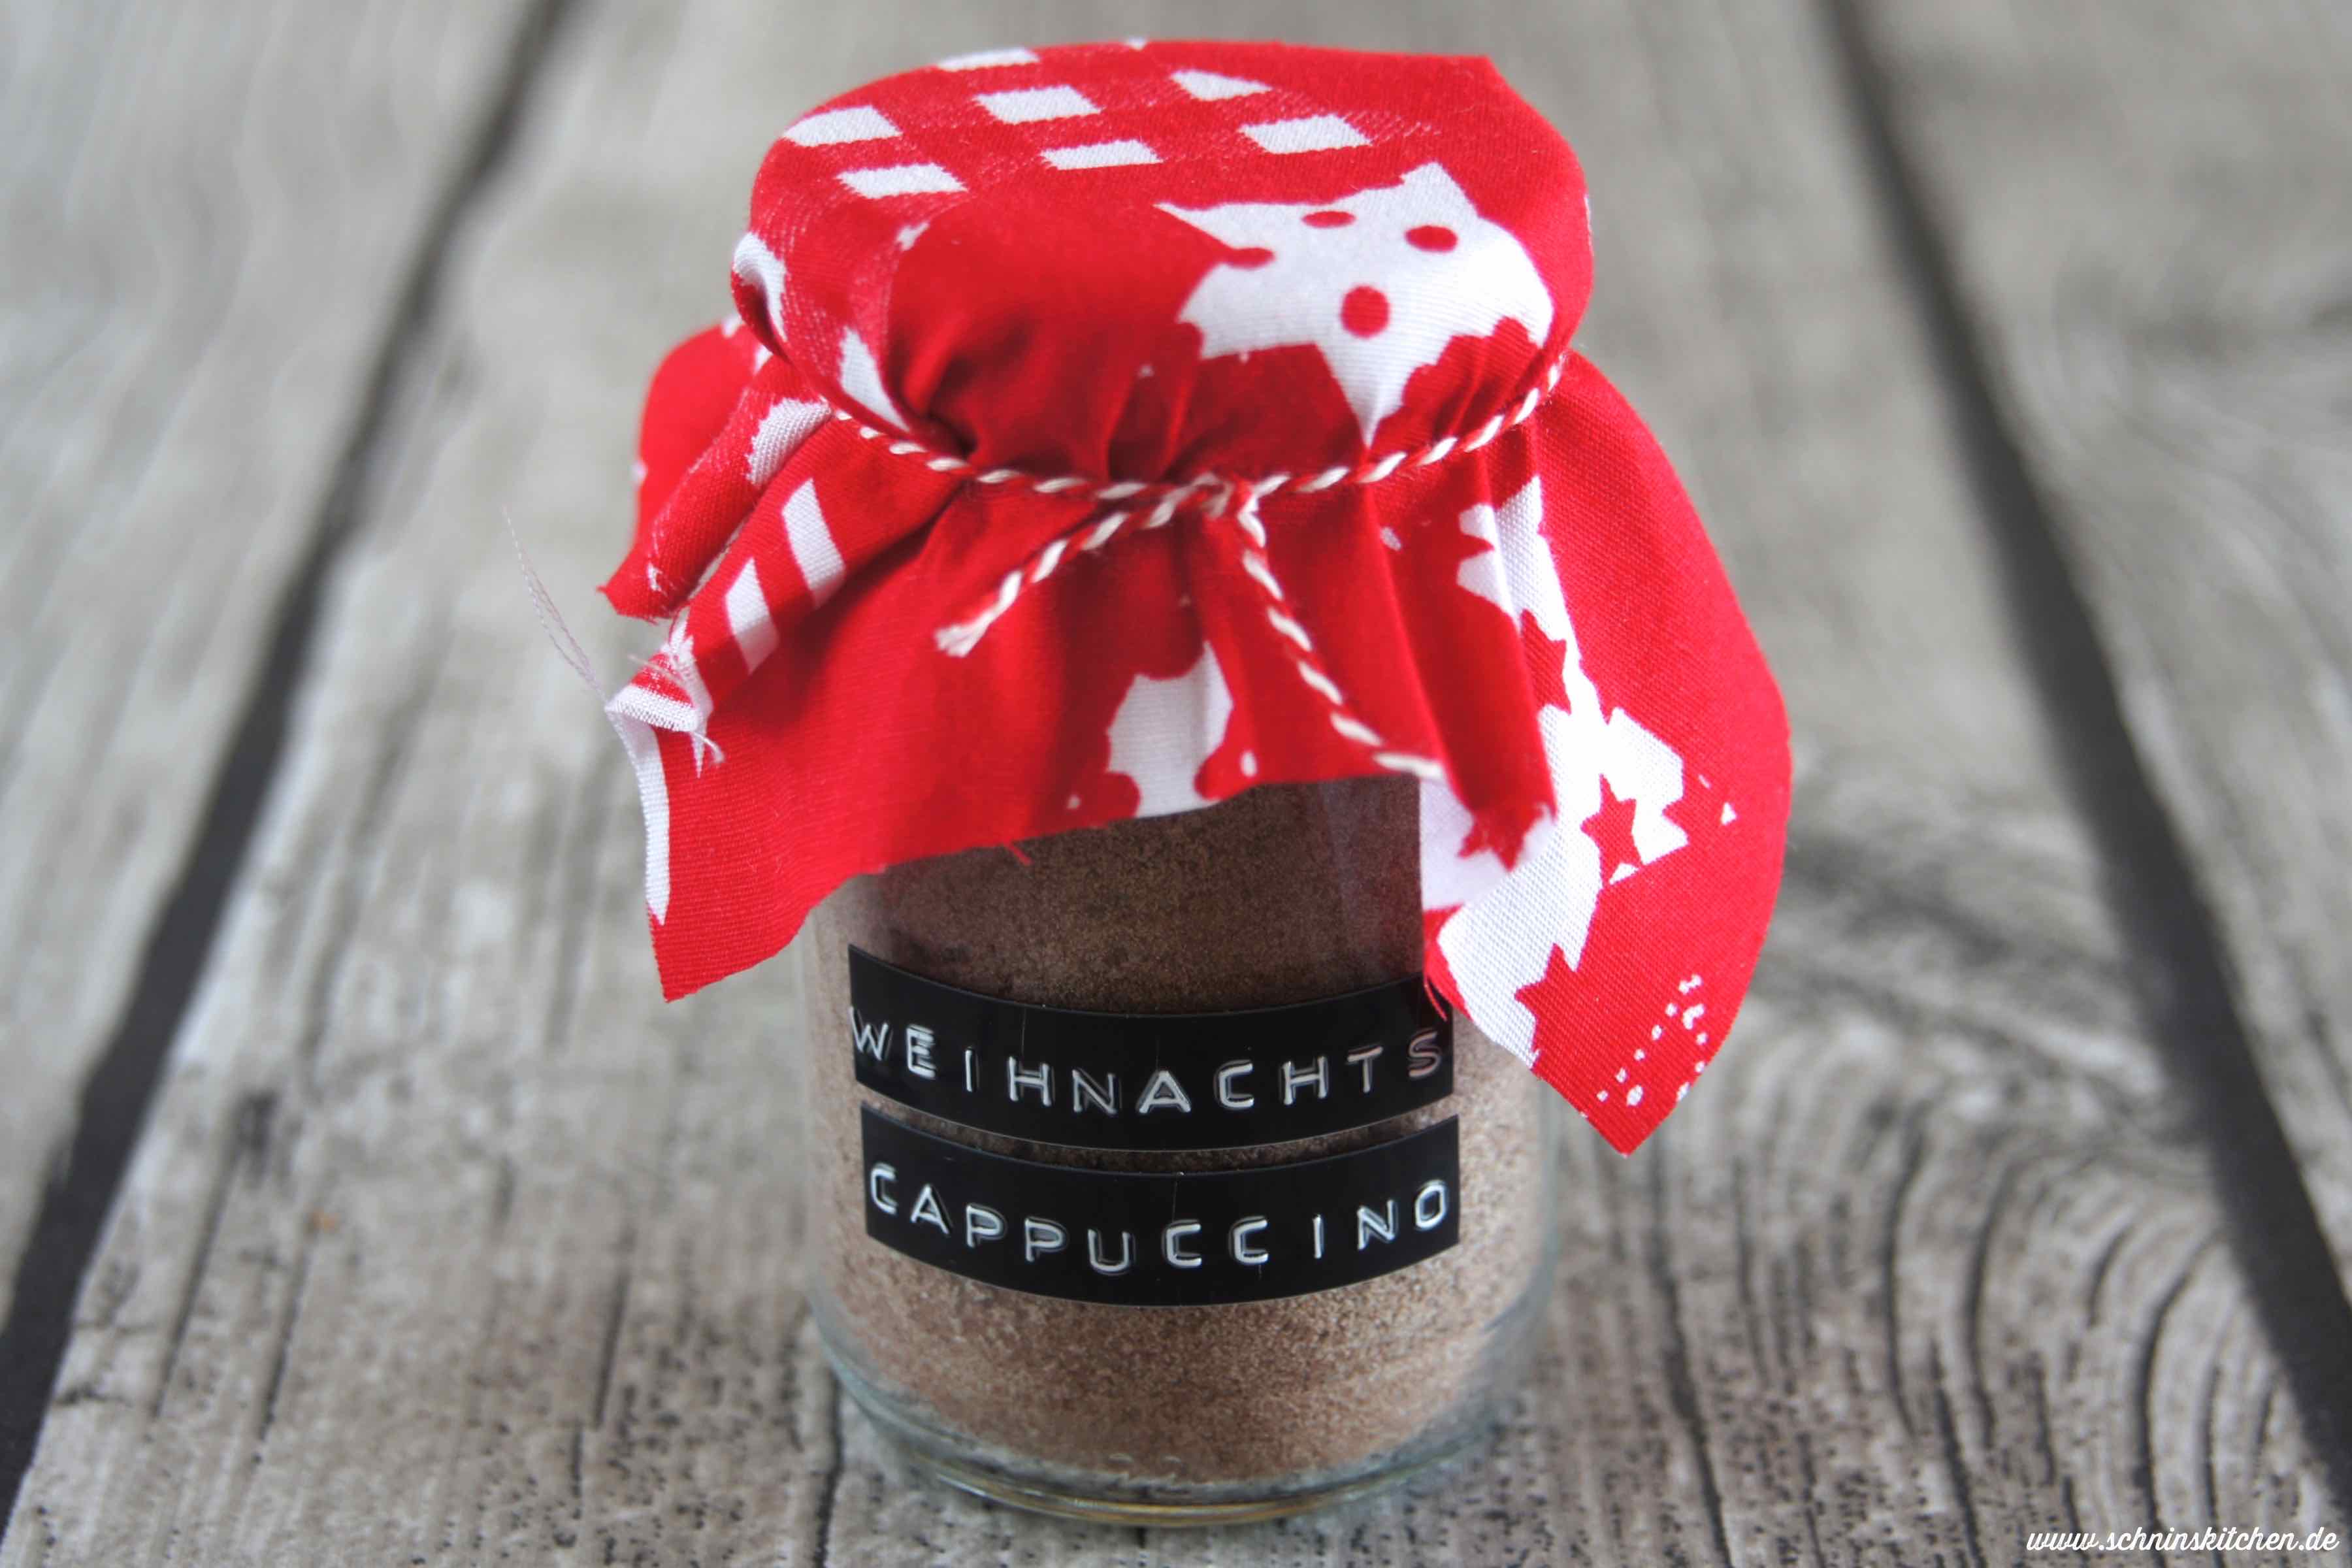 Weihnachts-Cappuccino-Mix selber machen - eine Mischung für leckeren weihnachtlichen Cappuccino als Geschenk aus der Küche | www.schninskitchen.de